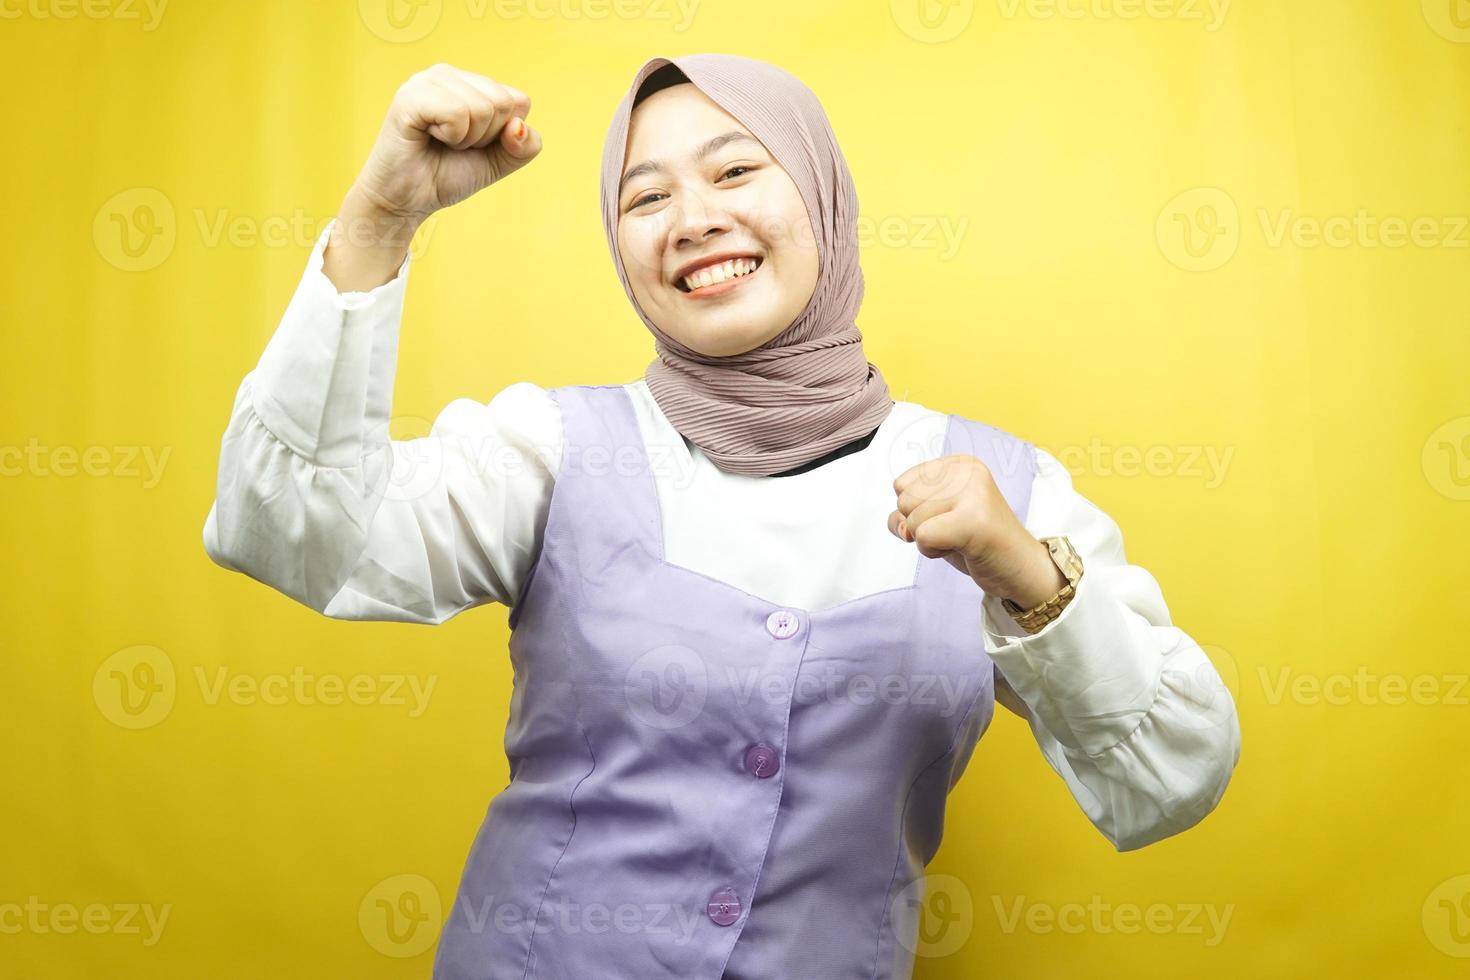 schöne junge asiatische muslimische frau, die selbstbewusst, enthusiastisch und fröhlich mit geballten händen lächelt, zeichen des erfolgs, schlagen, kämpfen, keine angst, einzeln auf gelbem hintergrund foto